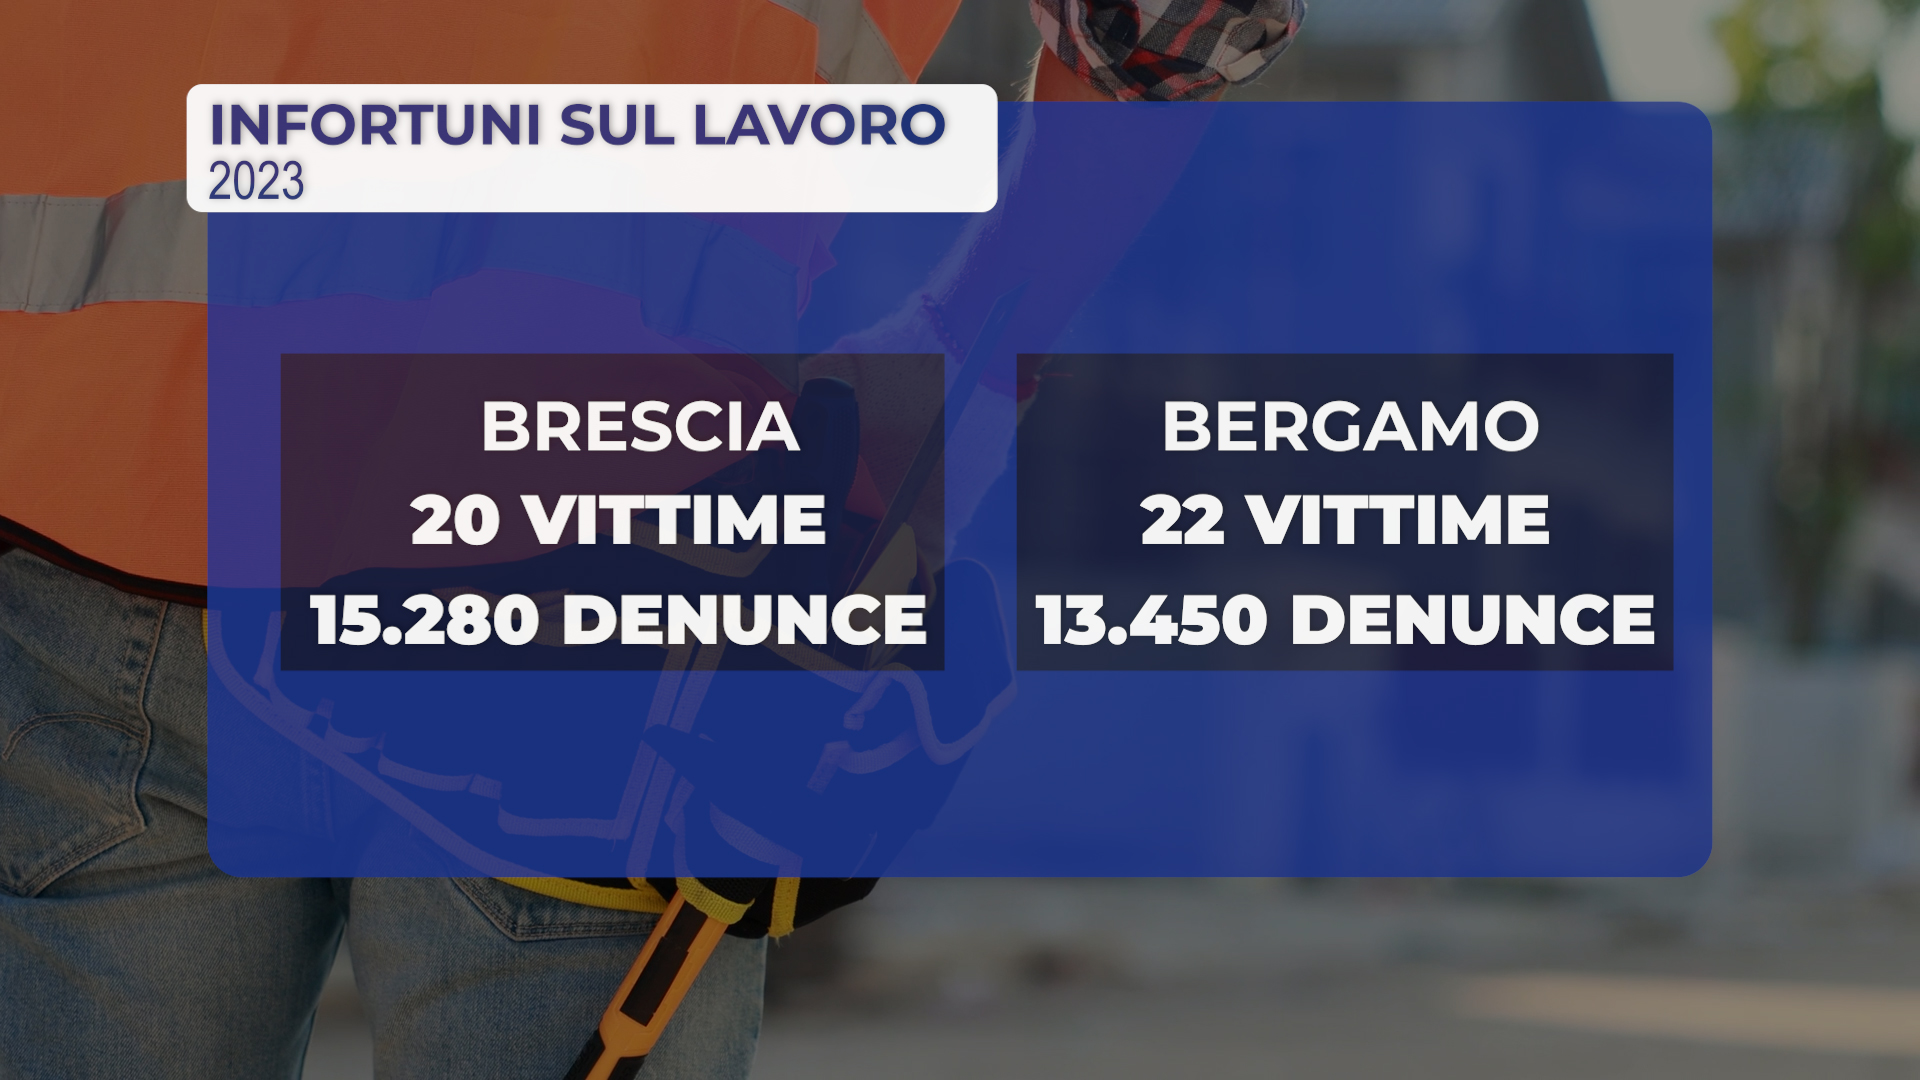 Infortuni sul lavoro: 42 morti nel 2023 tra Brescia e Bergamo